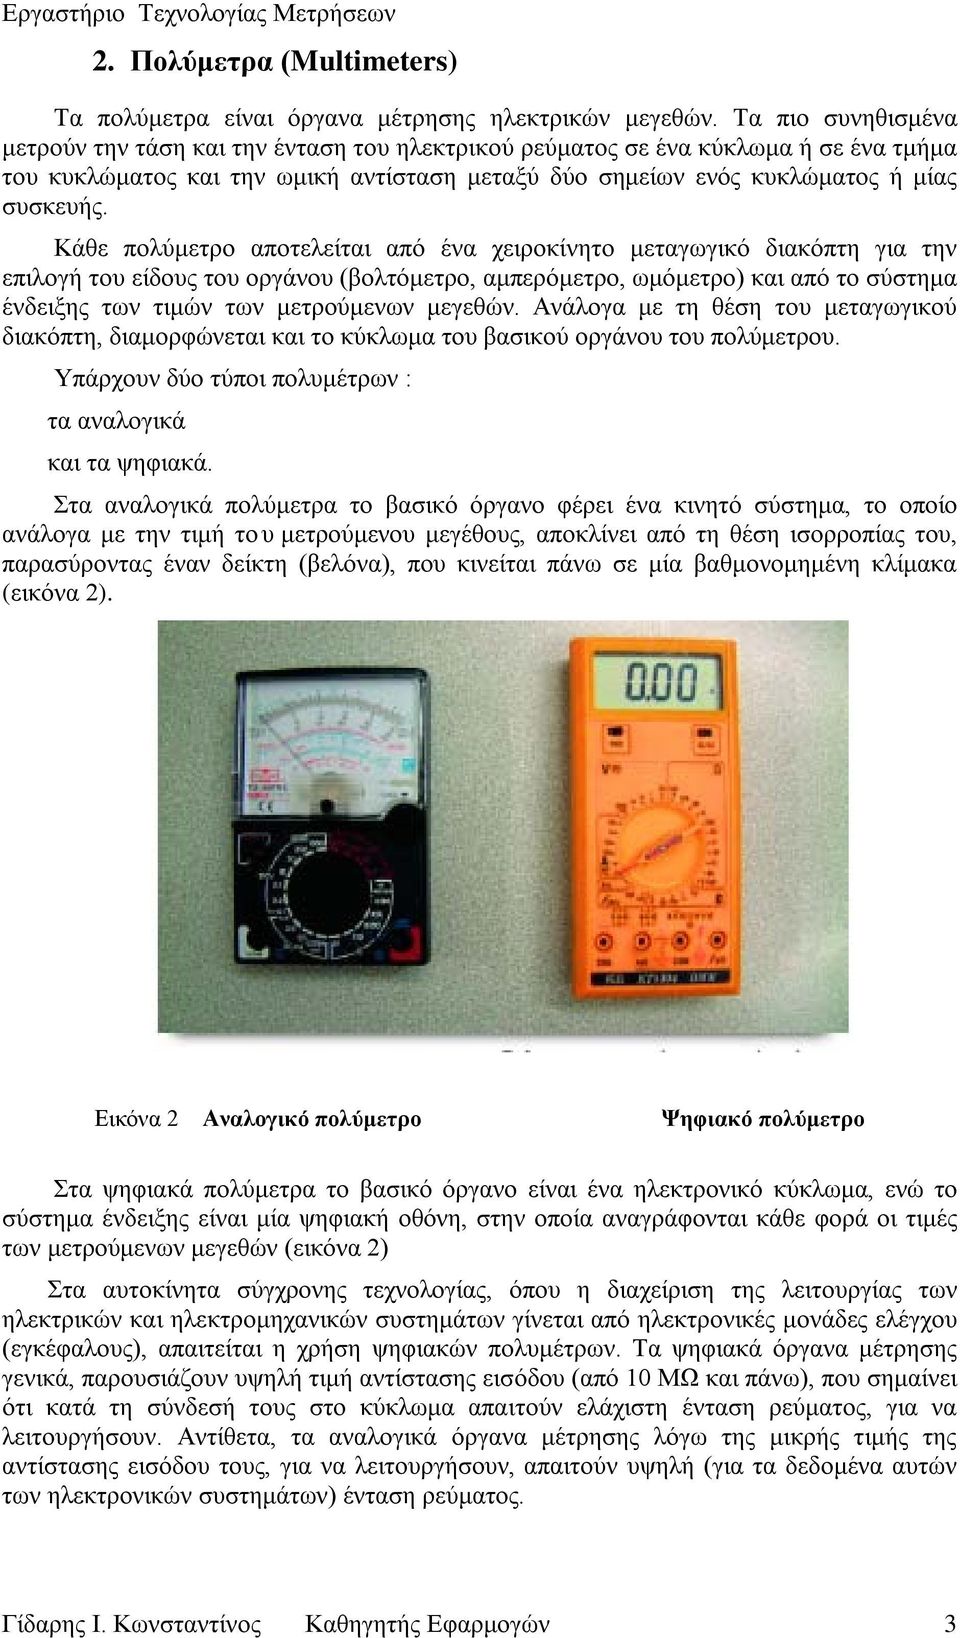 Κάθε πολύμετρο αποτελείται από ένα χειροκίνητο μεταγωγικό διακόπτη για την επιλογή του είδους του οργάνου (βολτόμετρο, αμπερόμετρο, ωμόμετρο) και από το σύστημα ένδειξης των τιμών των μετρούμενων